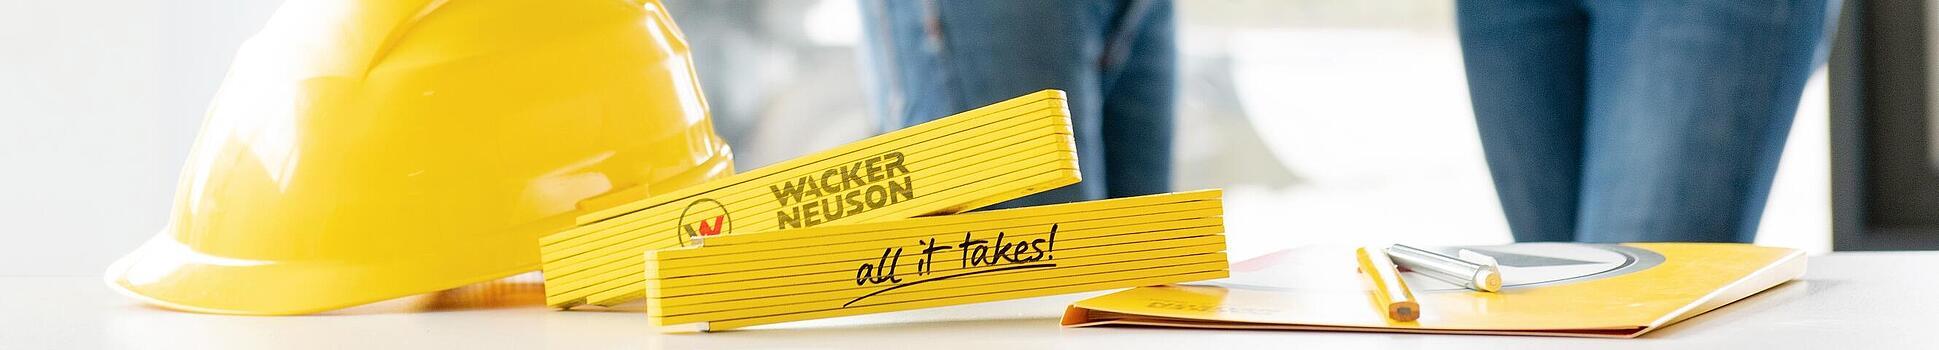 Des articles de merchandising Wacker Neuson sont posés sur une table au premier plan, collaborateur Wacker Neuson en arrière-plan.